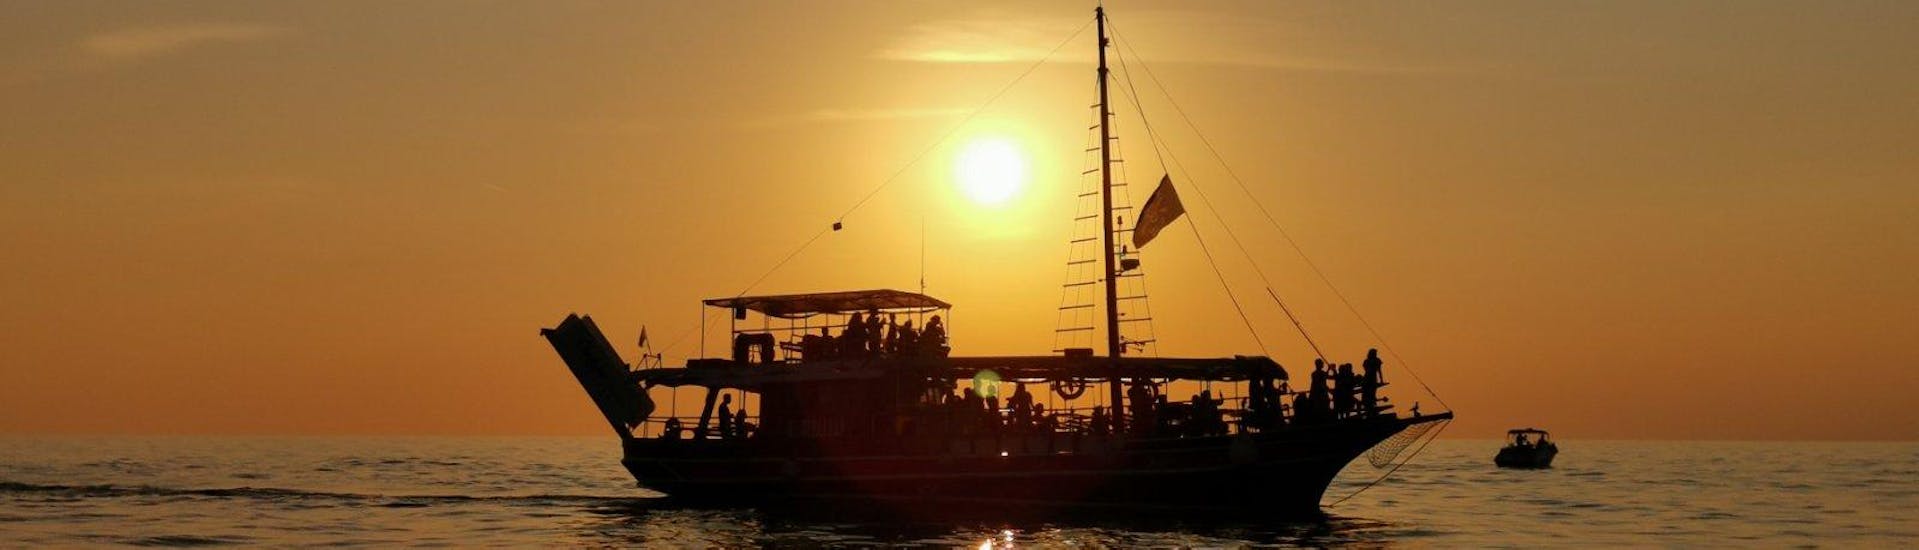 El cielo se vuelve naranja durante el Paseo en barco al atardecer en la ribera de Poreč con avistamiento de delfines organizado por Kristofor Boat Excursions Poreč.